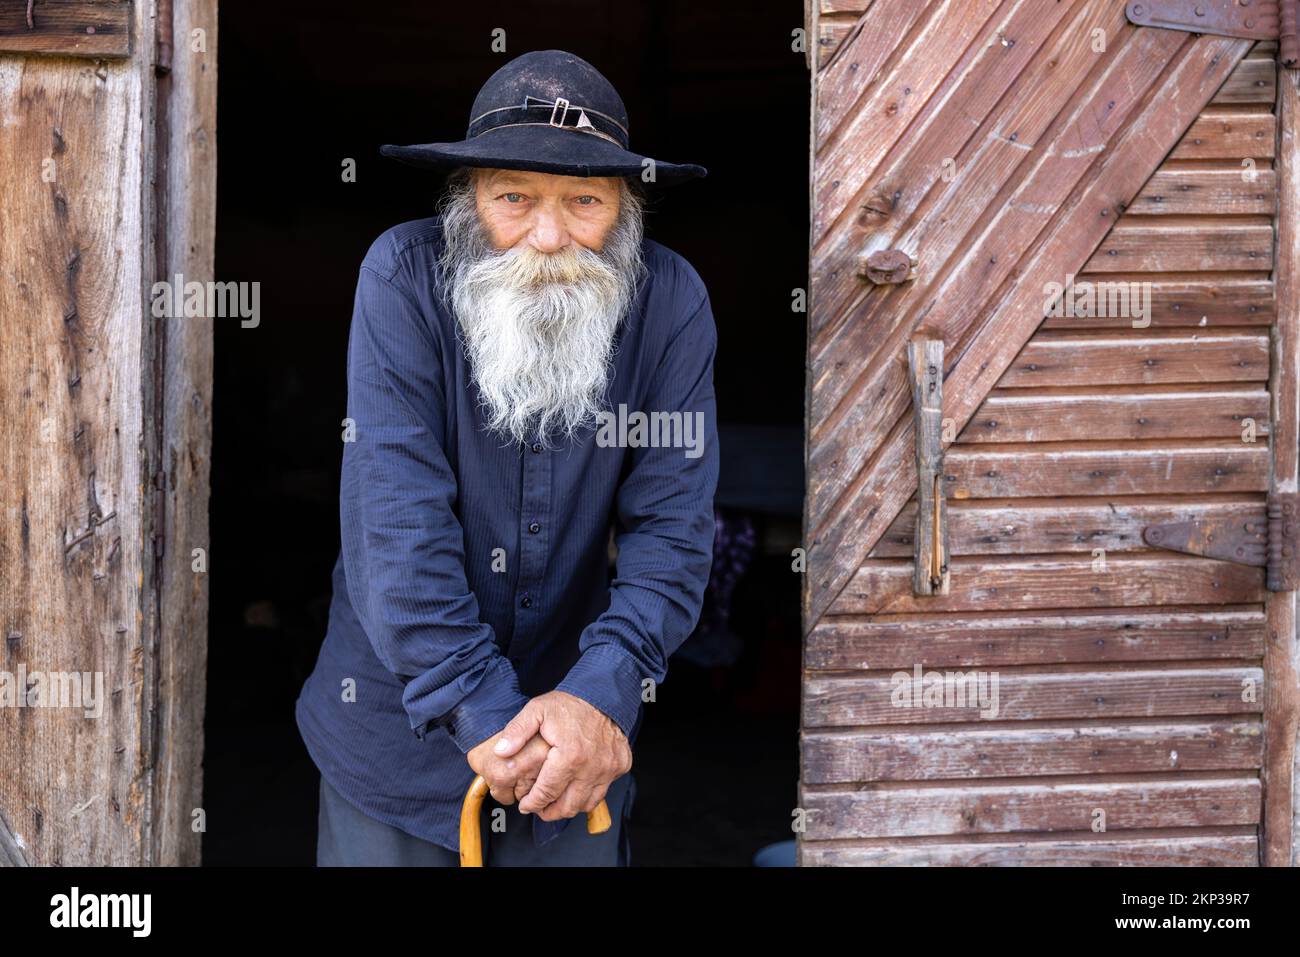 Rom Zingari nel villaggio di Brateiu, Transilvania, Romania Foto Stock